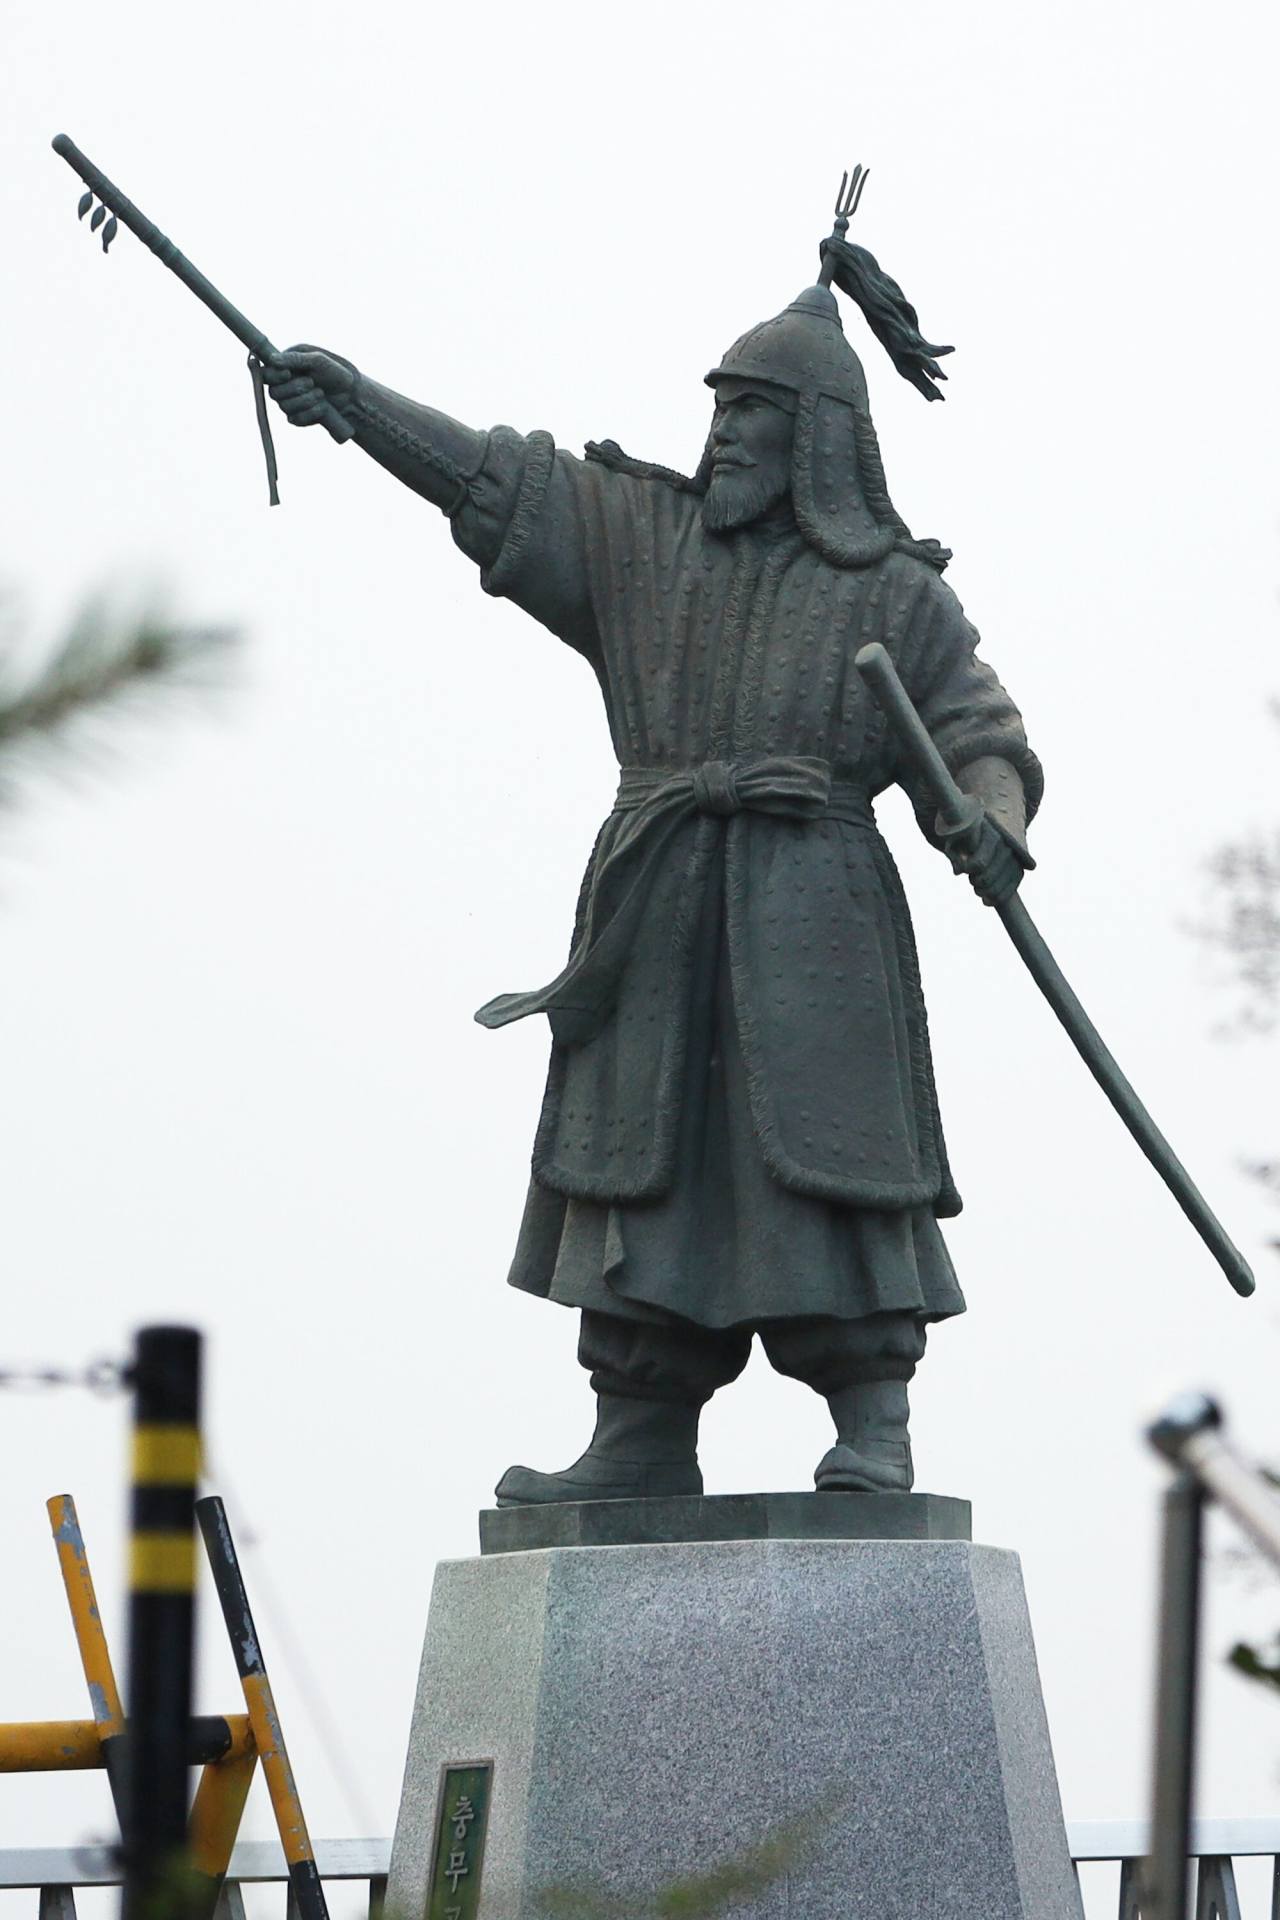 [Visual History of Korea] Do or die naval battles defined Adm. Yi Sun-sin as hero